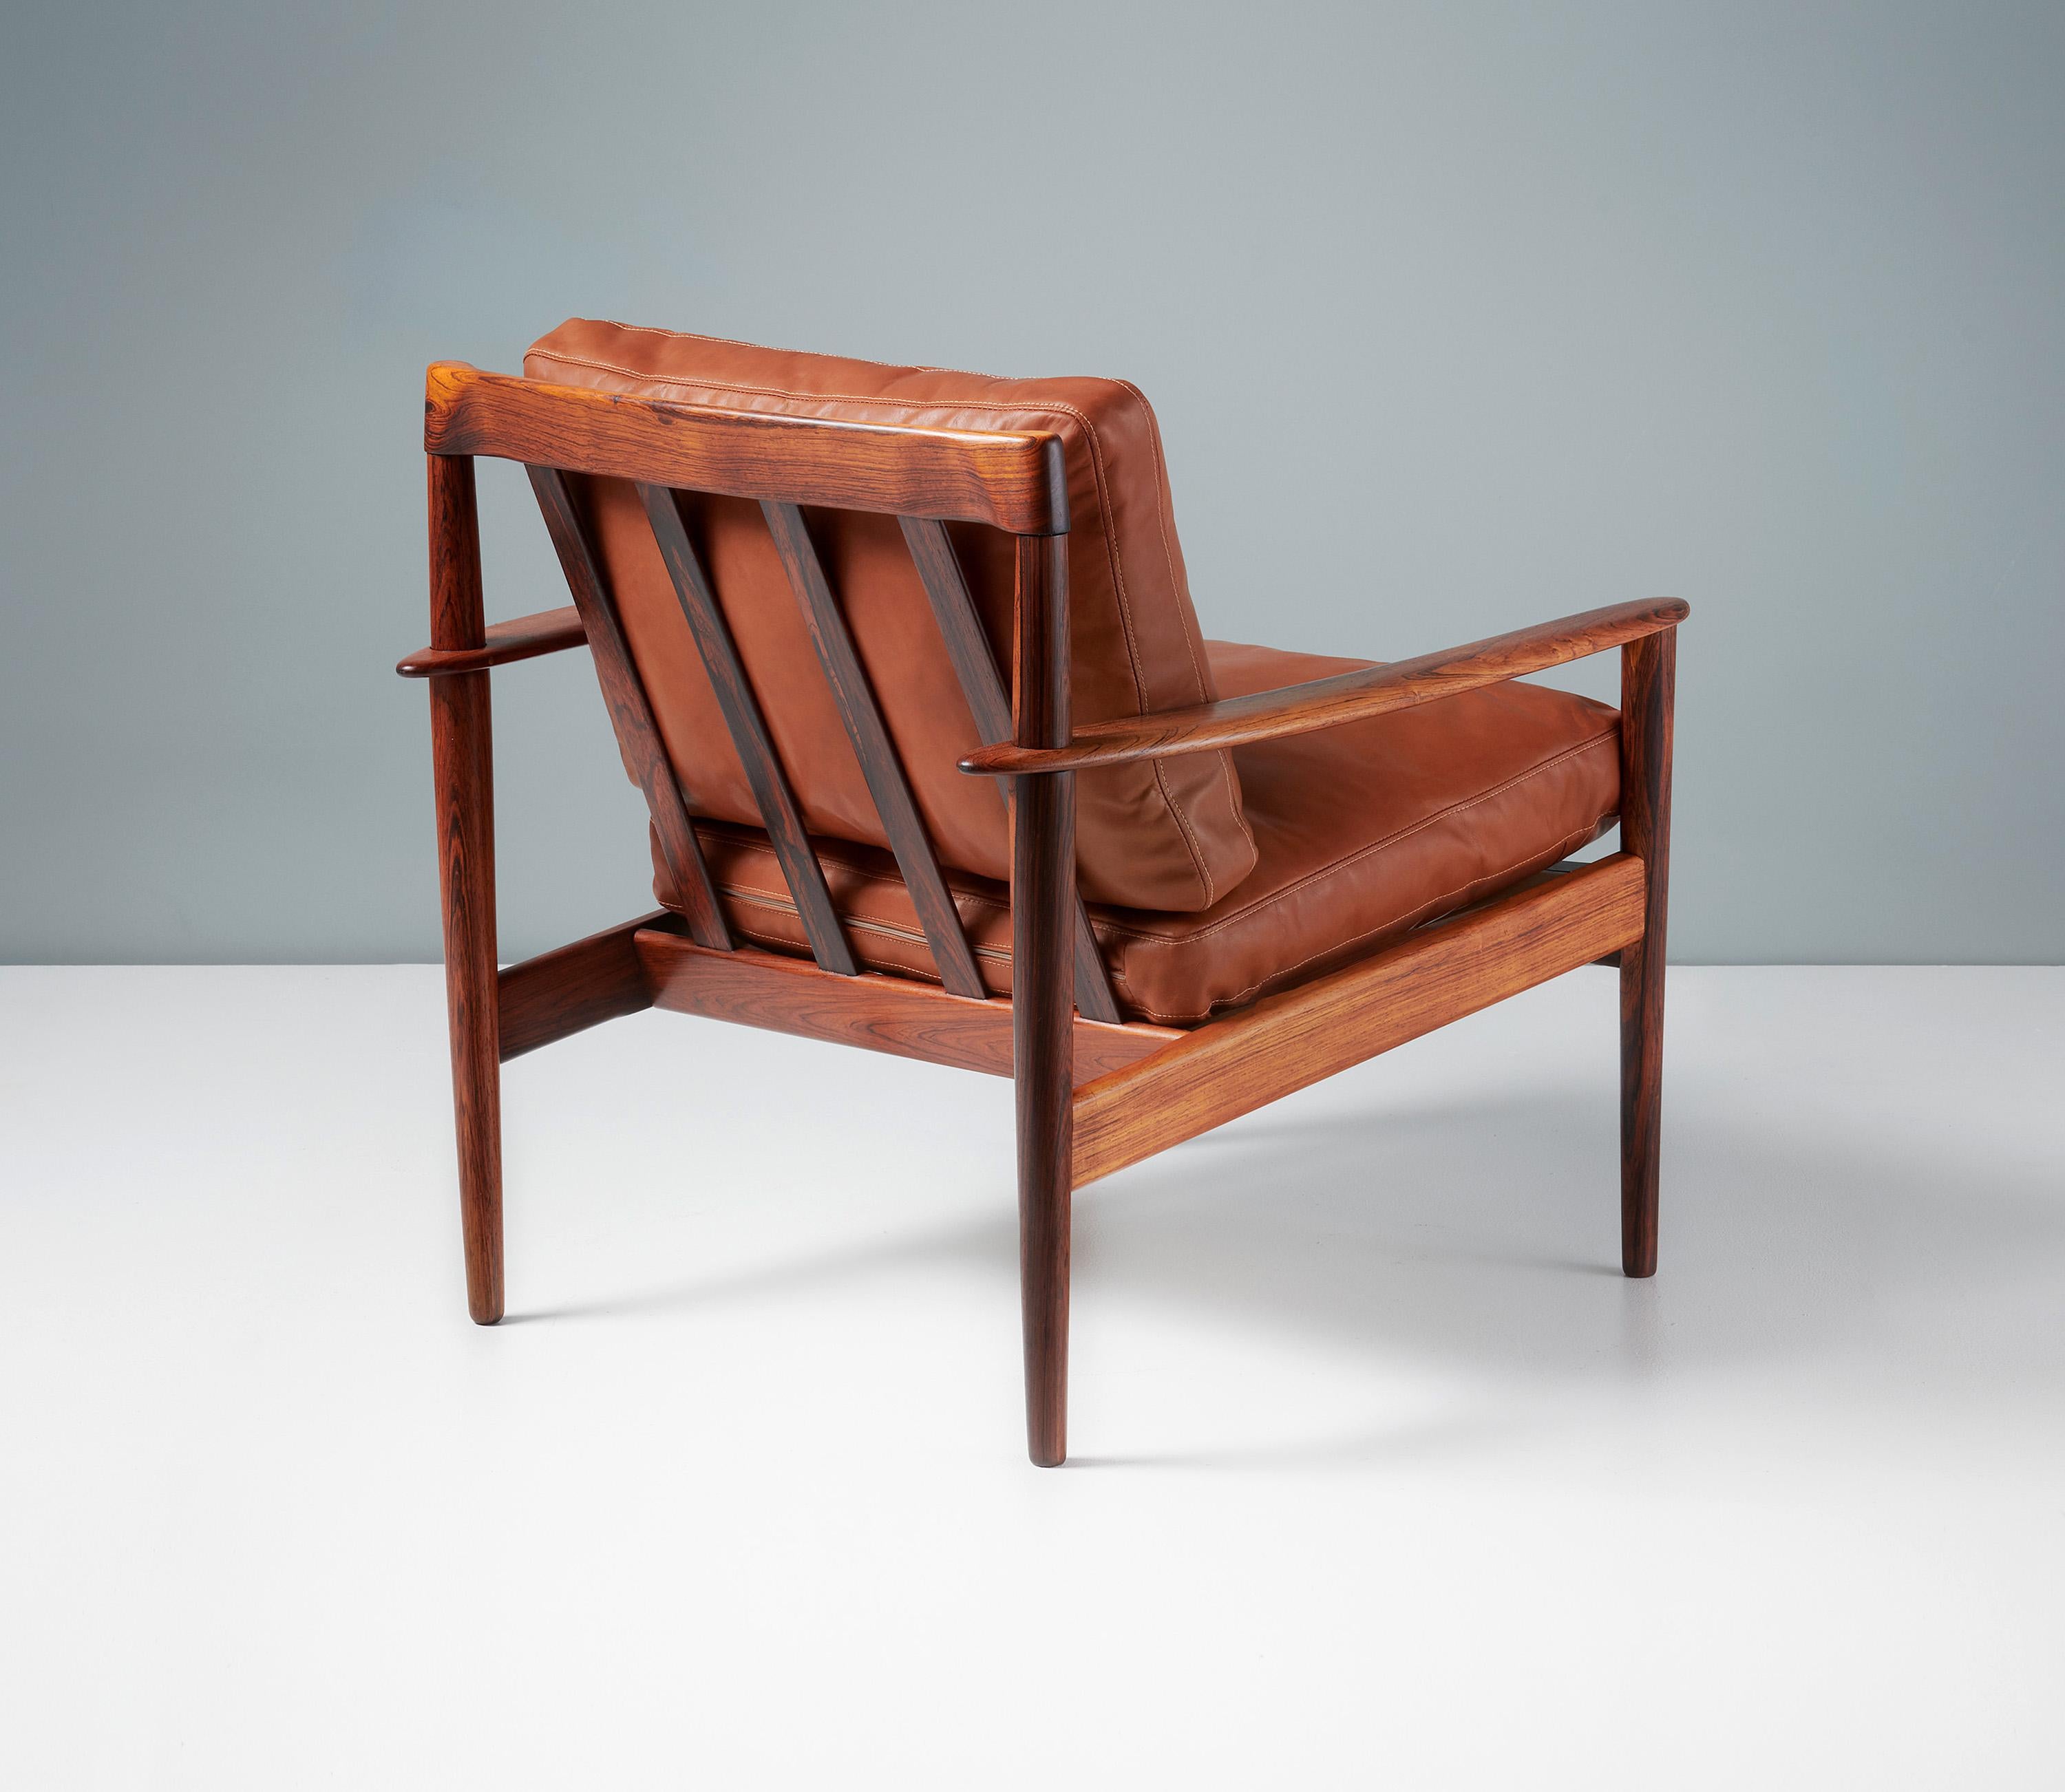 Grete Jalk Modell PJ-56 Liegestuhl

Ein schöner Sessel, entworfen von Grete Jalk für den Tischler Poul Jeppesen in Dänemark, um 1956. Diese Exemplare sind aus wunderschönem Palisanderholz mit einer besonders ungewöhnlichen, exotischen Maserung.